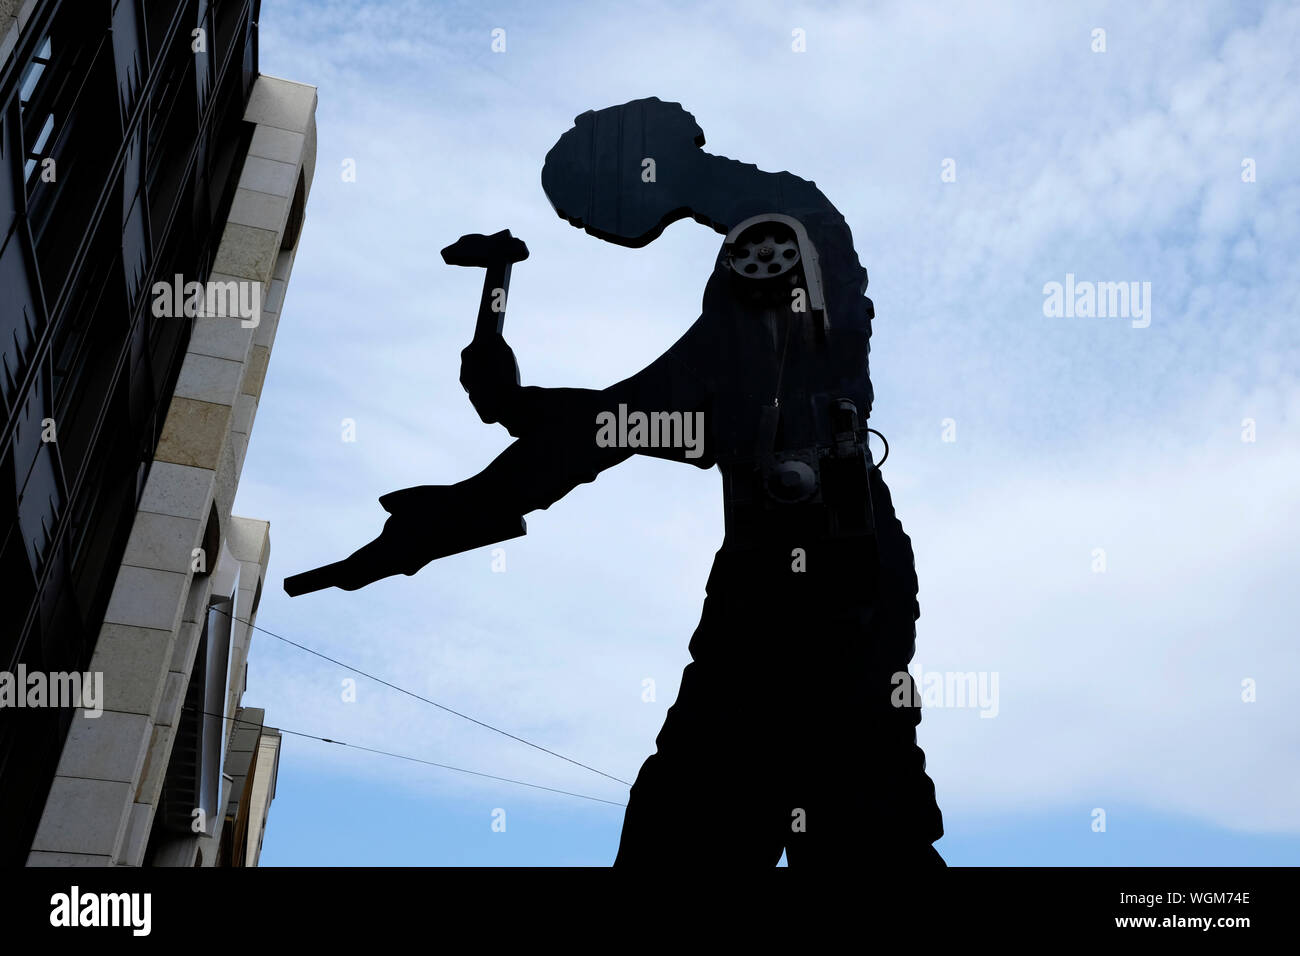 Hammering man, une sculpture géante de l'artiste américain Jonathan Borofsky. Bâle, Suisse Banque D'Images